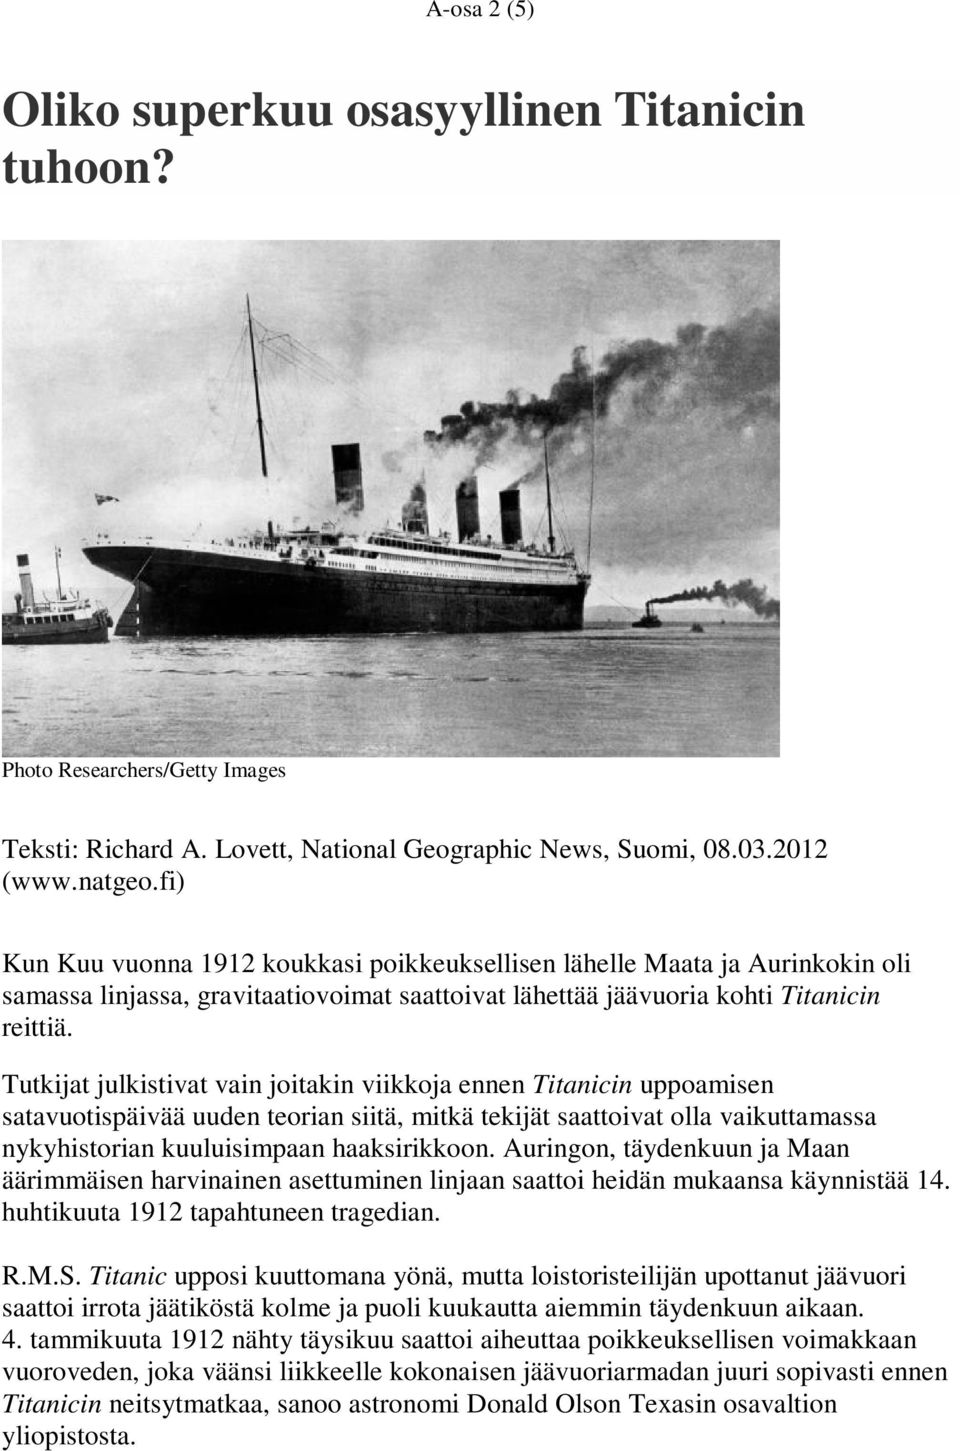 Tutkijat julkistivat vain joitakin viikkoja ennen Titanicin uppoamisen satavuotispäivää uuden teorian siitä, mitkä tekijät saattoivat olla vaikuttamassa nykyhistorian kuuluisimpaan haaksirikkoon.